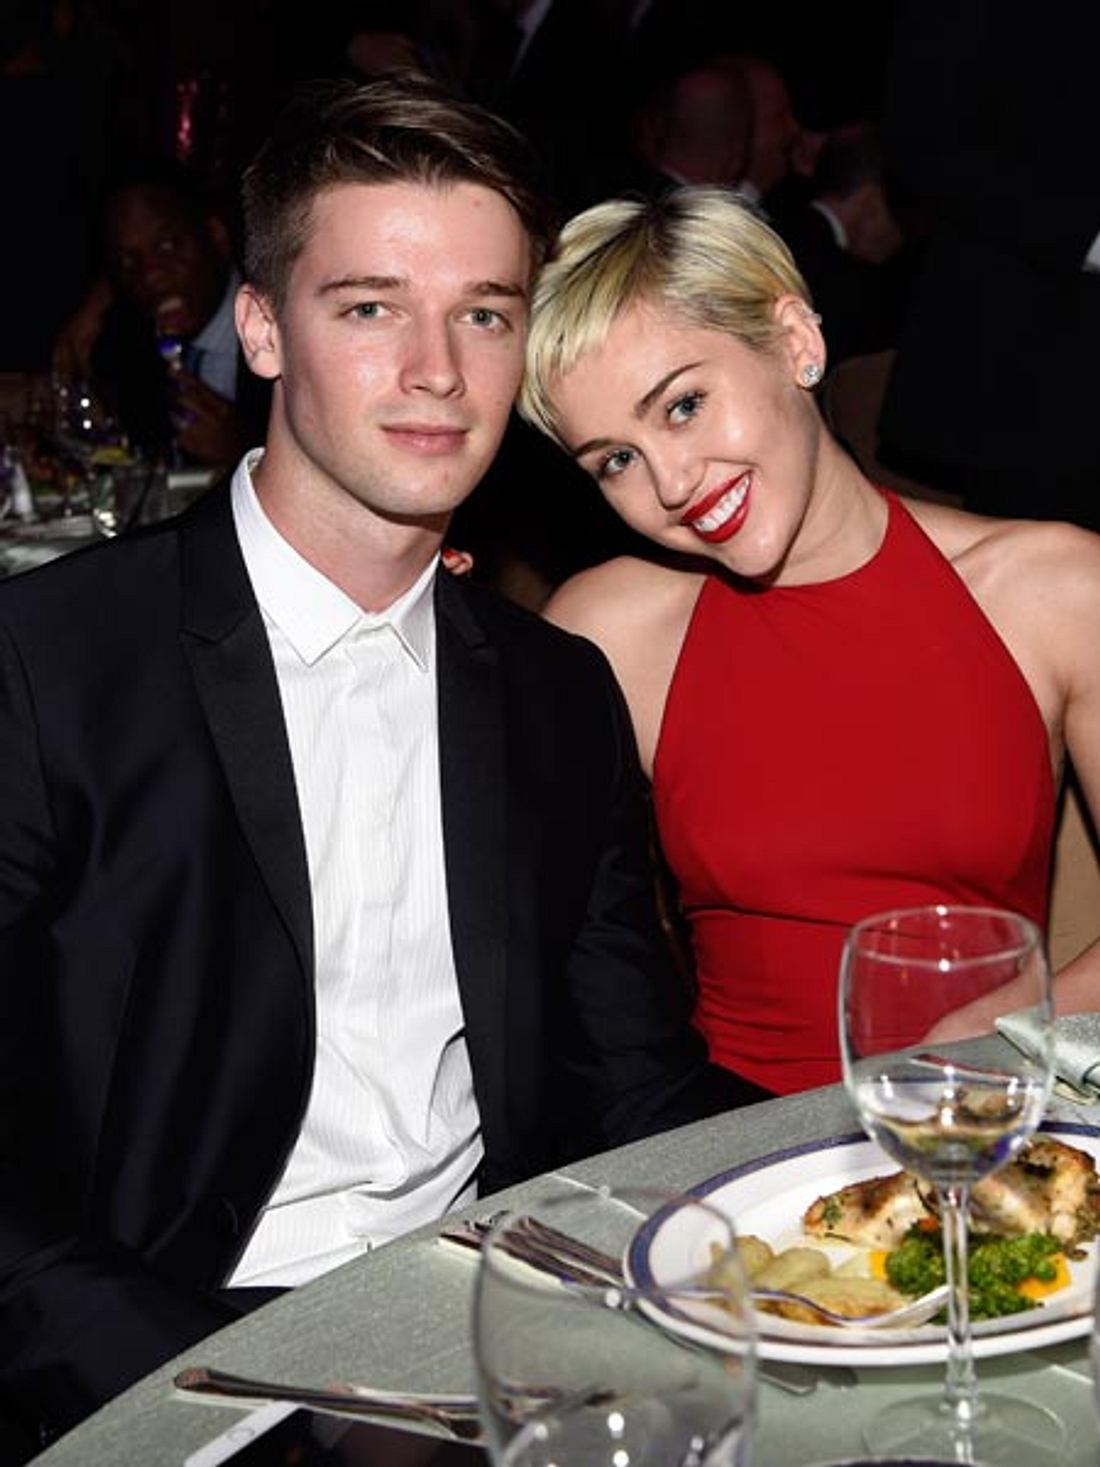 Miley Cyrus und Patrick Schwarzenegger waren gemeinsam beim Dinner.